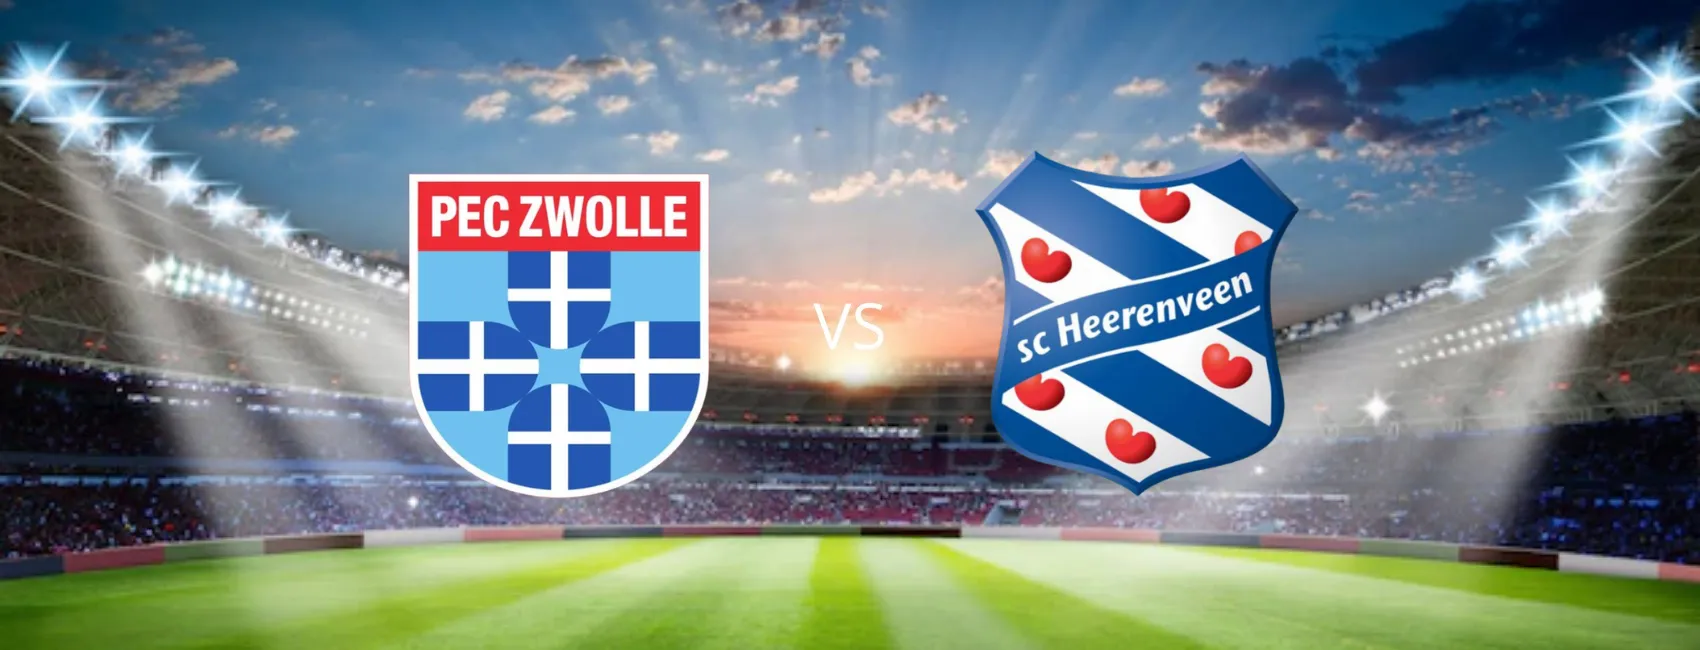 PEC Zwolle vs Heerenveen